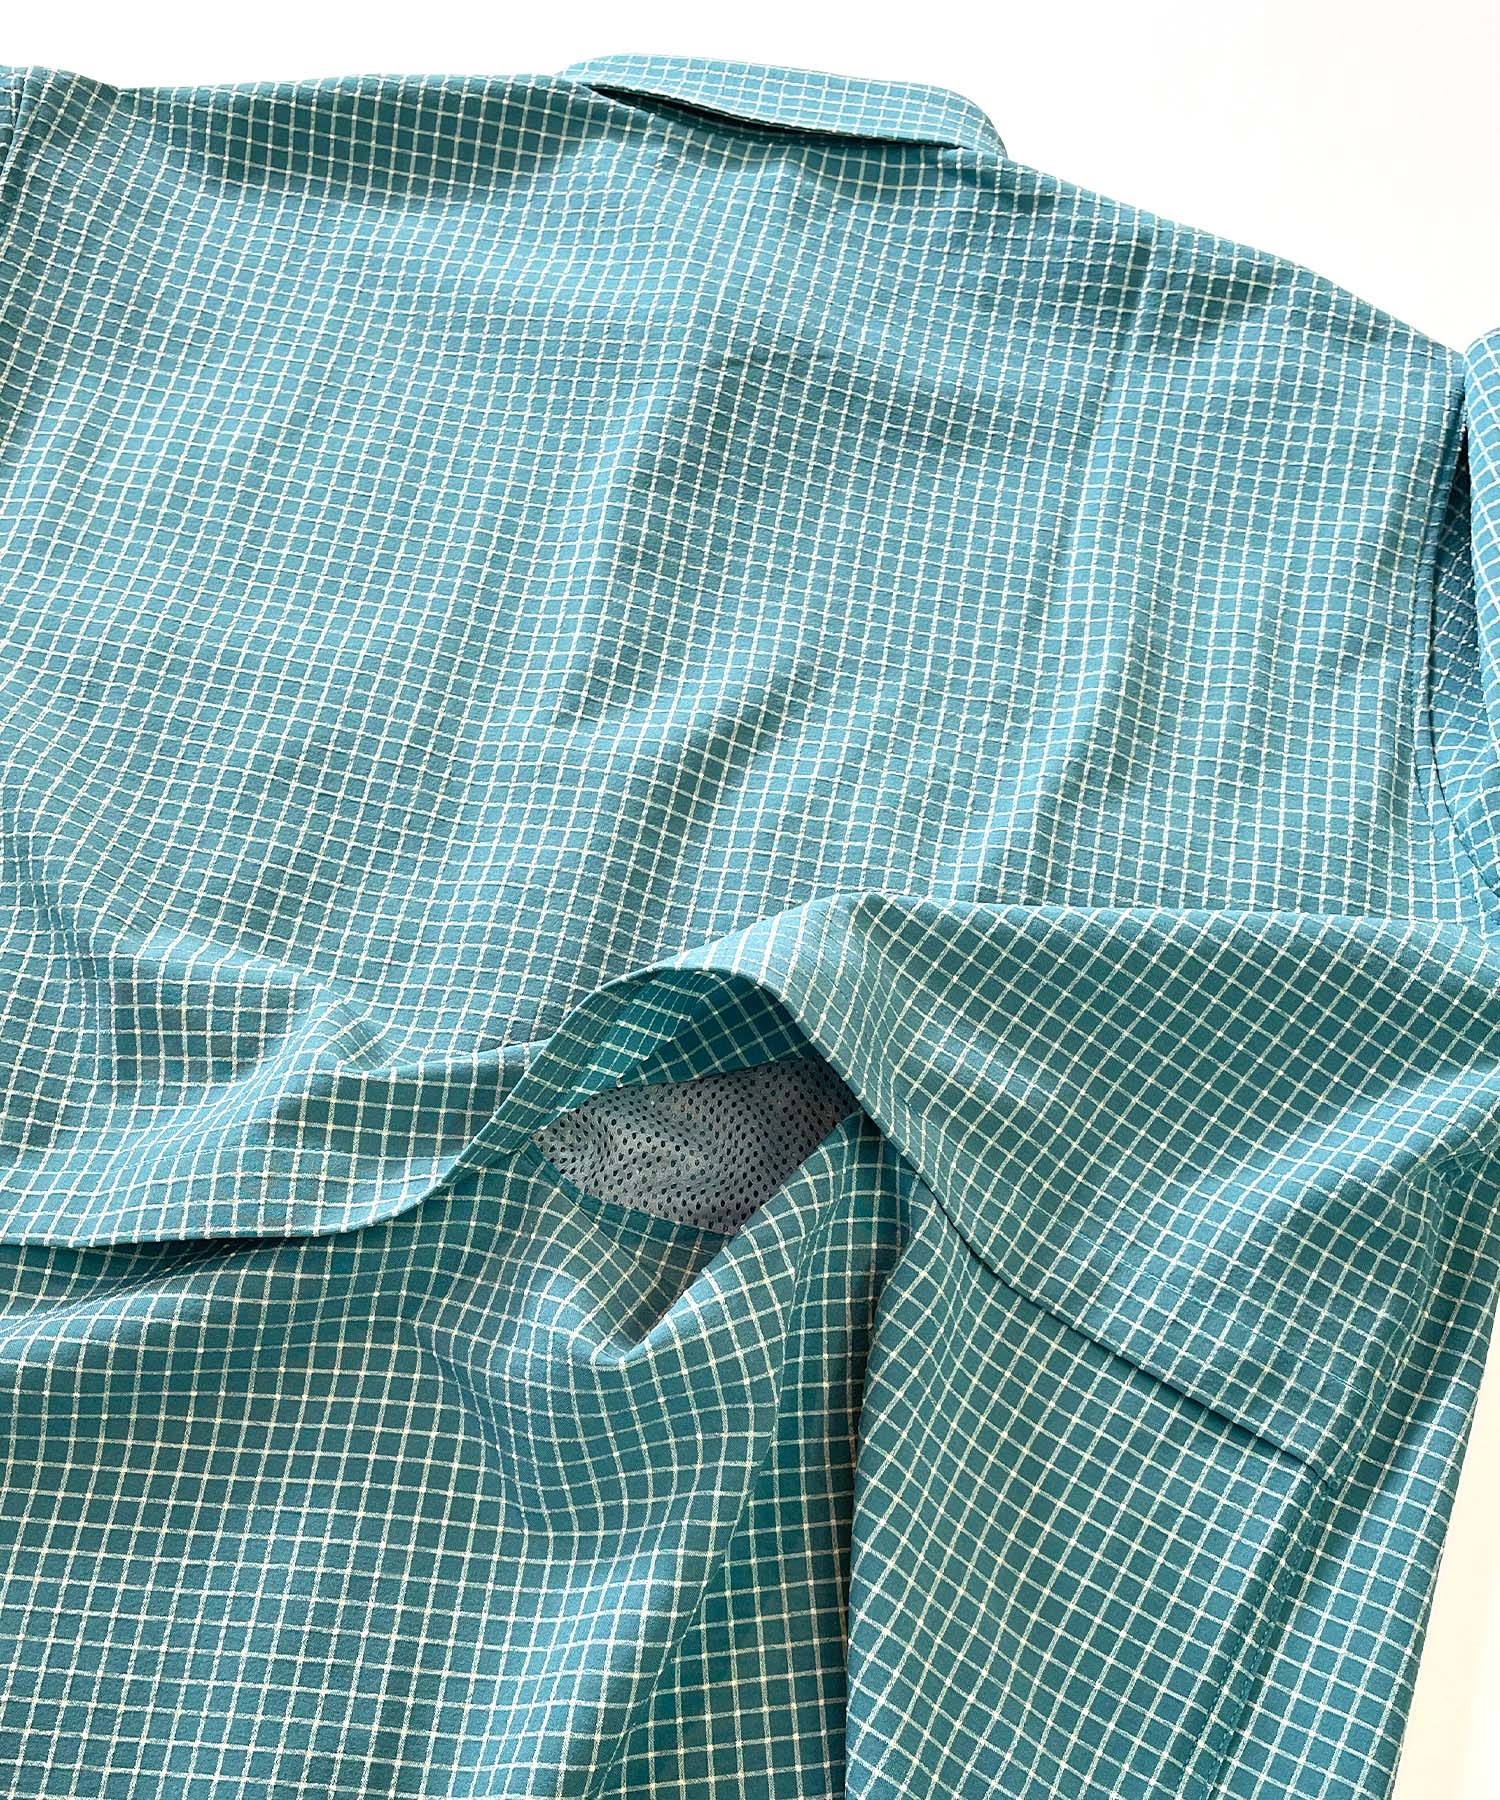 【マトメガイ対象】DEAR LAUREL ディアローレル メンズ ユーティリティーフラップシャツ 半袖 格子柄 Utility flap shirts D24S2401(BLK-M)